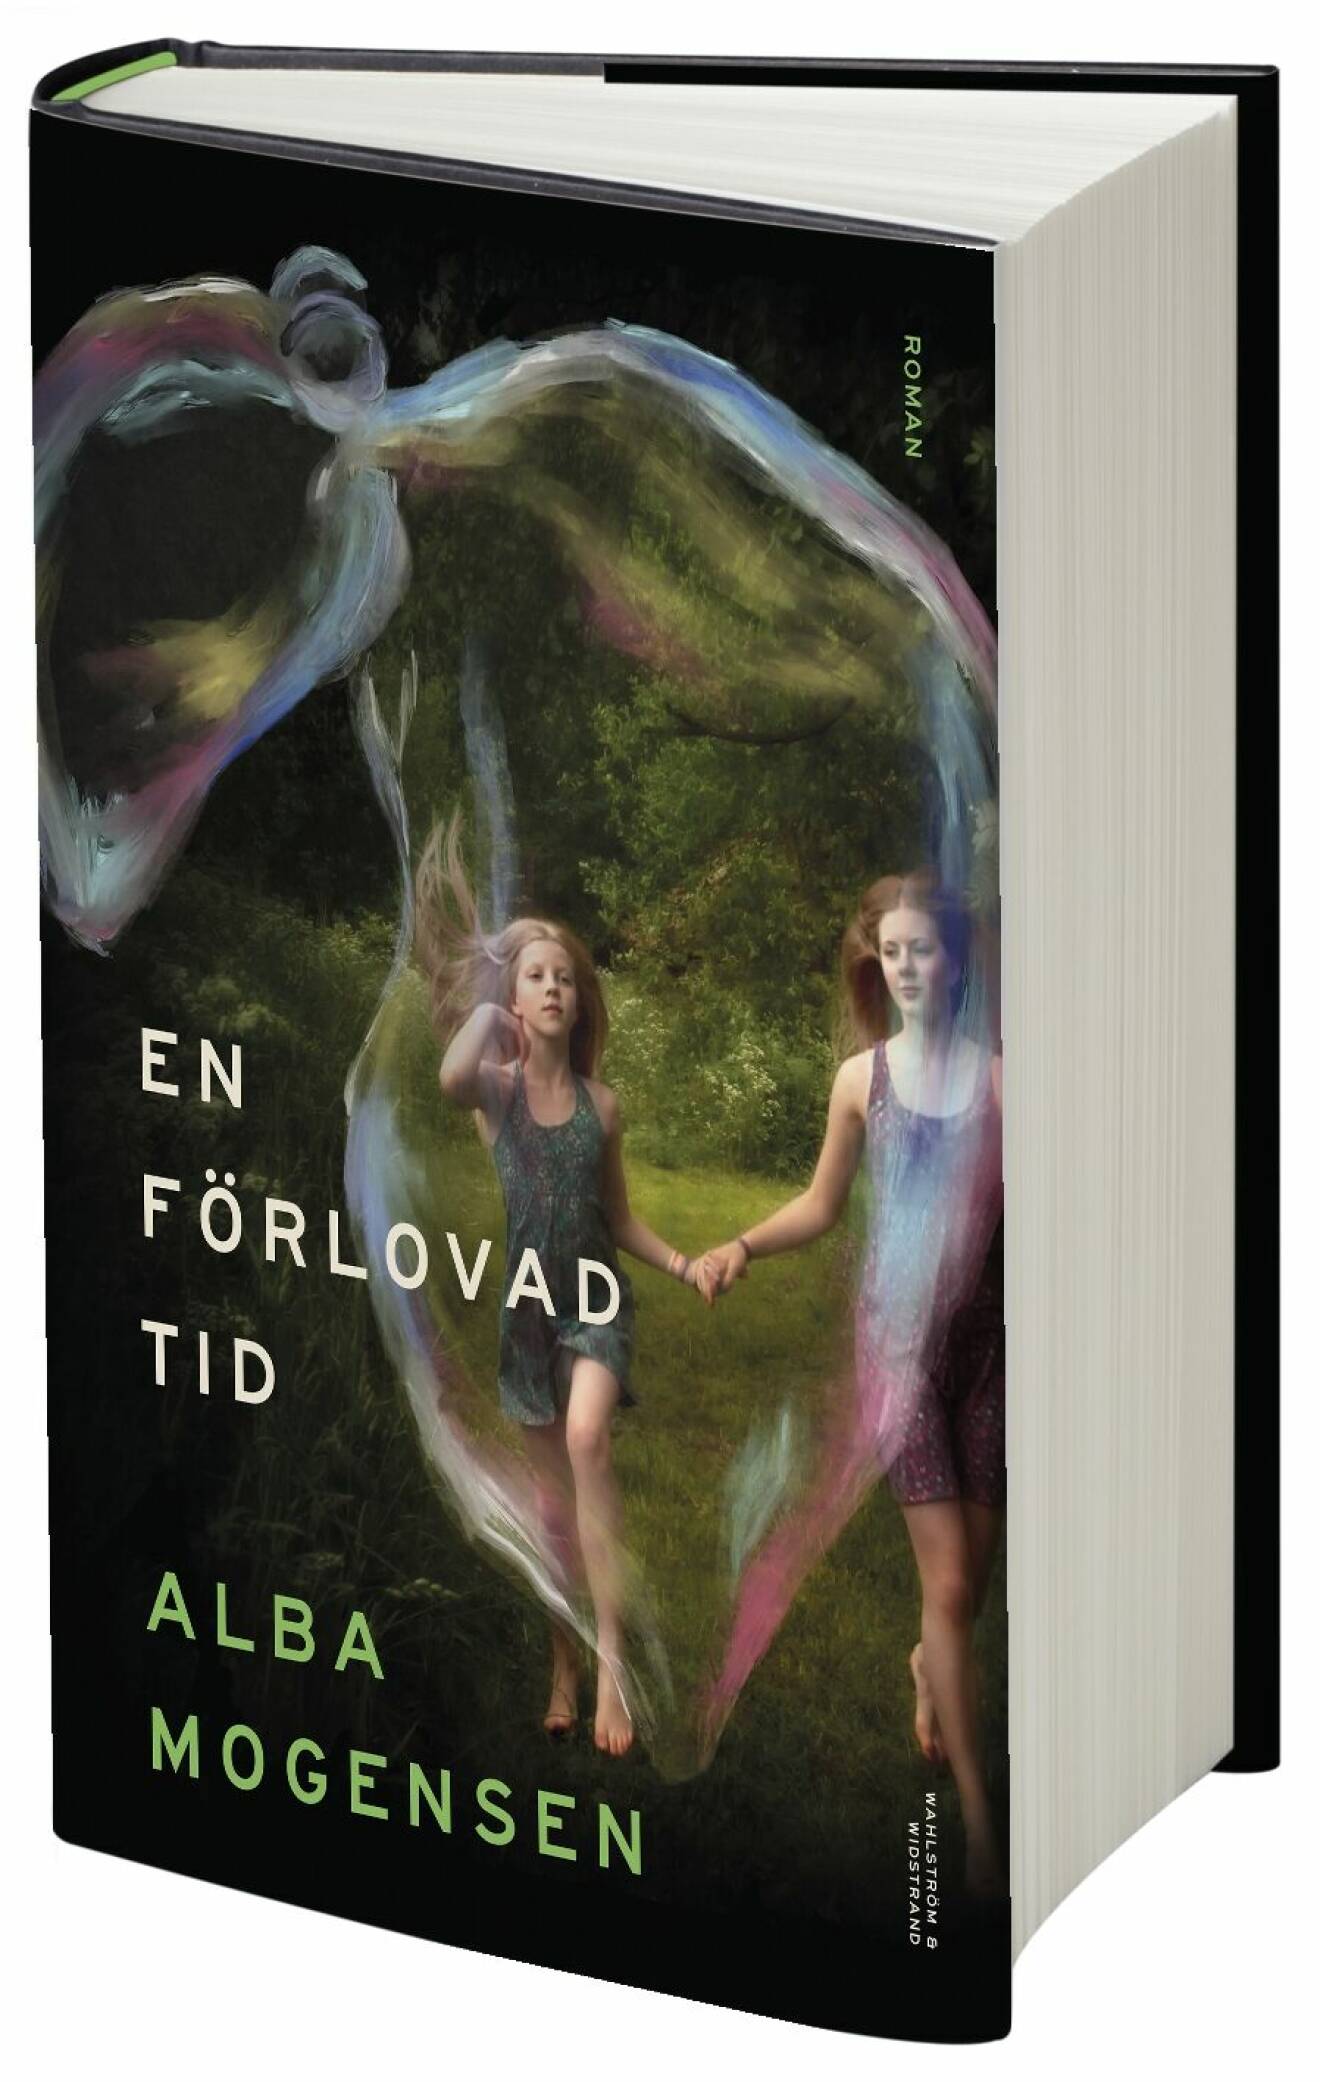 Alba mogensens nya roman en förlovad tid.